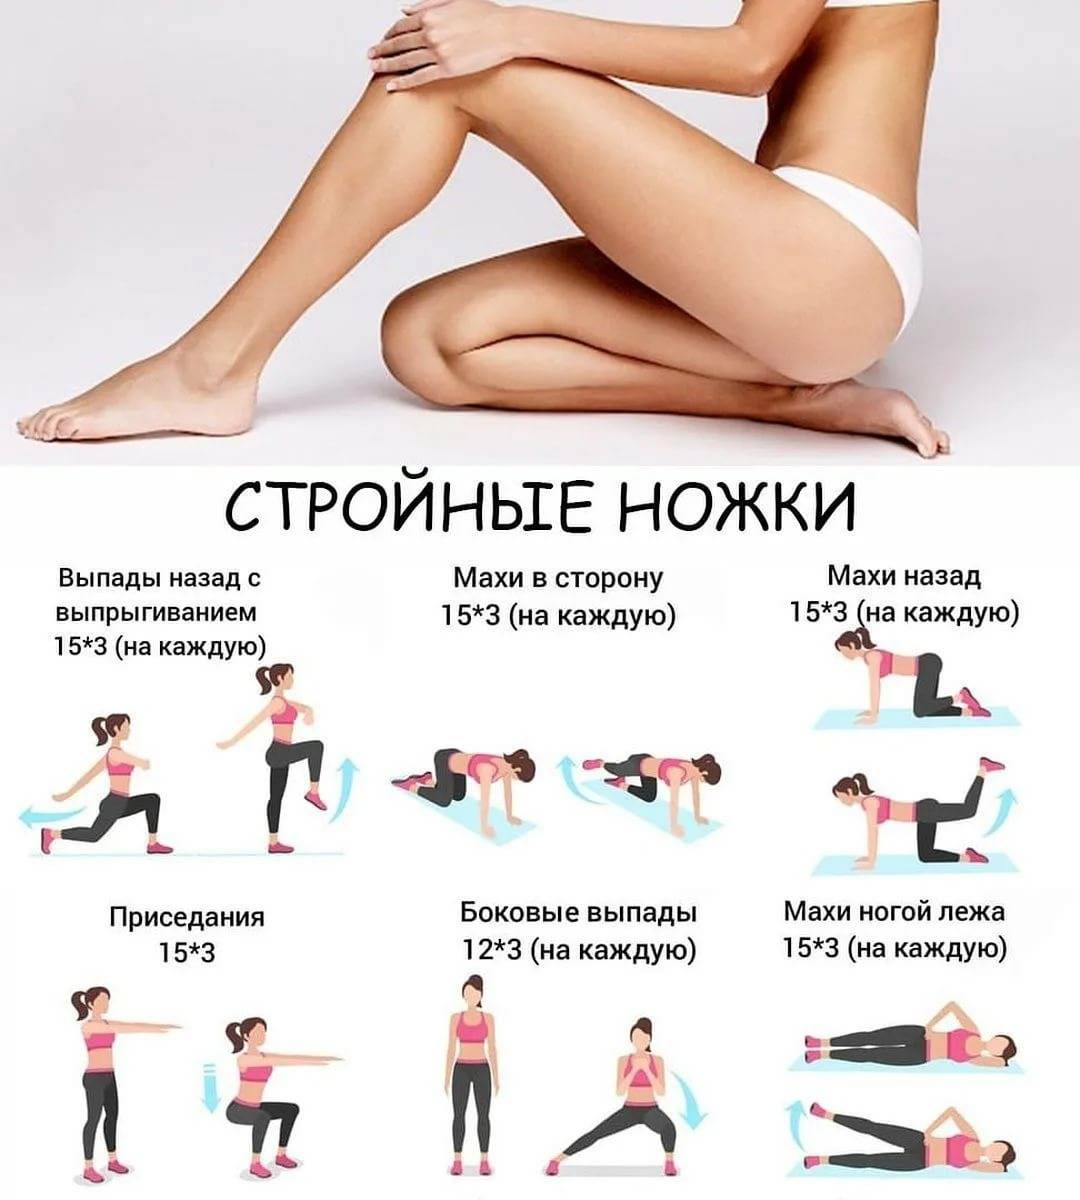 Как похудеть в икрах: какие делать упражнения, чтобы похудели полные ноги | официальный сайт – “славянская клиника похудения и правильного питания”